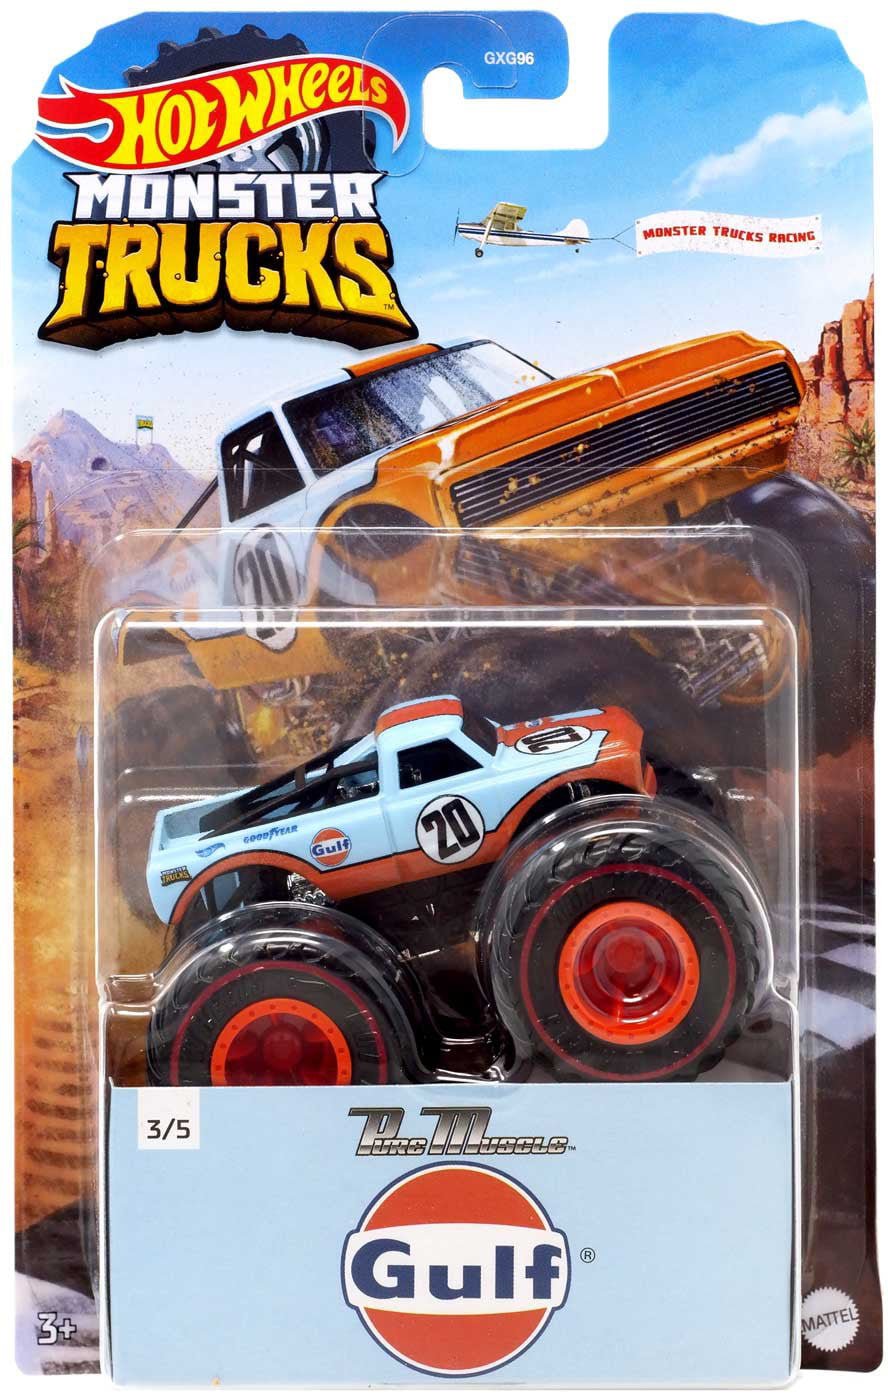 Hot Wheels Monster Trucks Pure Muscle Diecast Car [Gulf] - Walmart.com